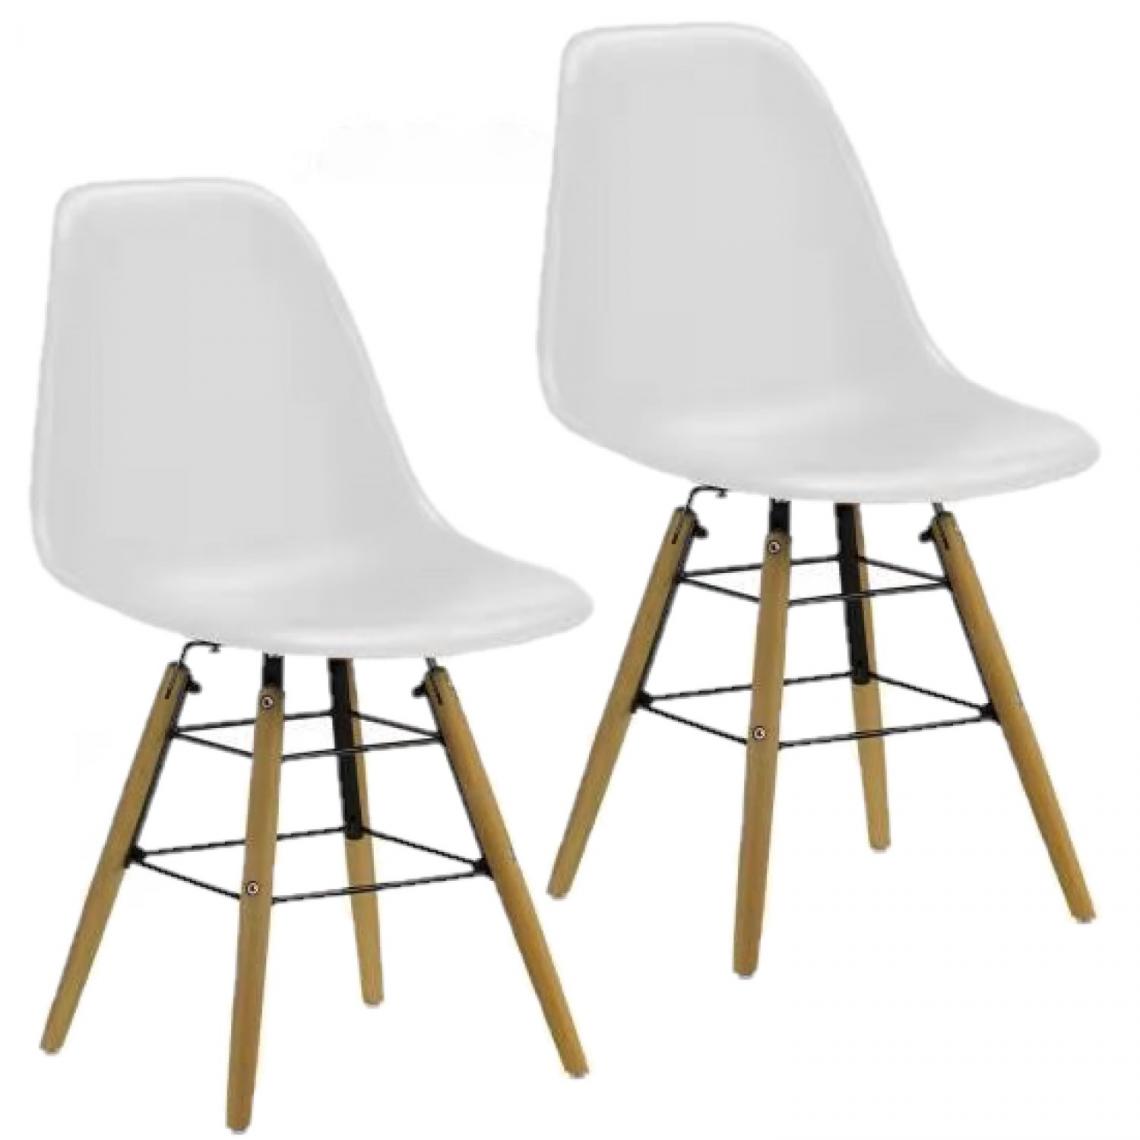 Toilinux - Lot de 2 chaises de table Liv avec pieds en bois de hêtre et châssis en métal - Hauteur d'assise 44 cm - Blanc - Chaises